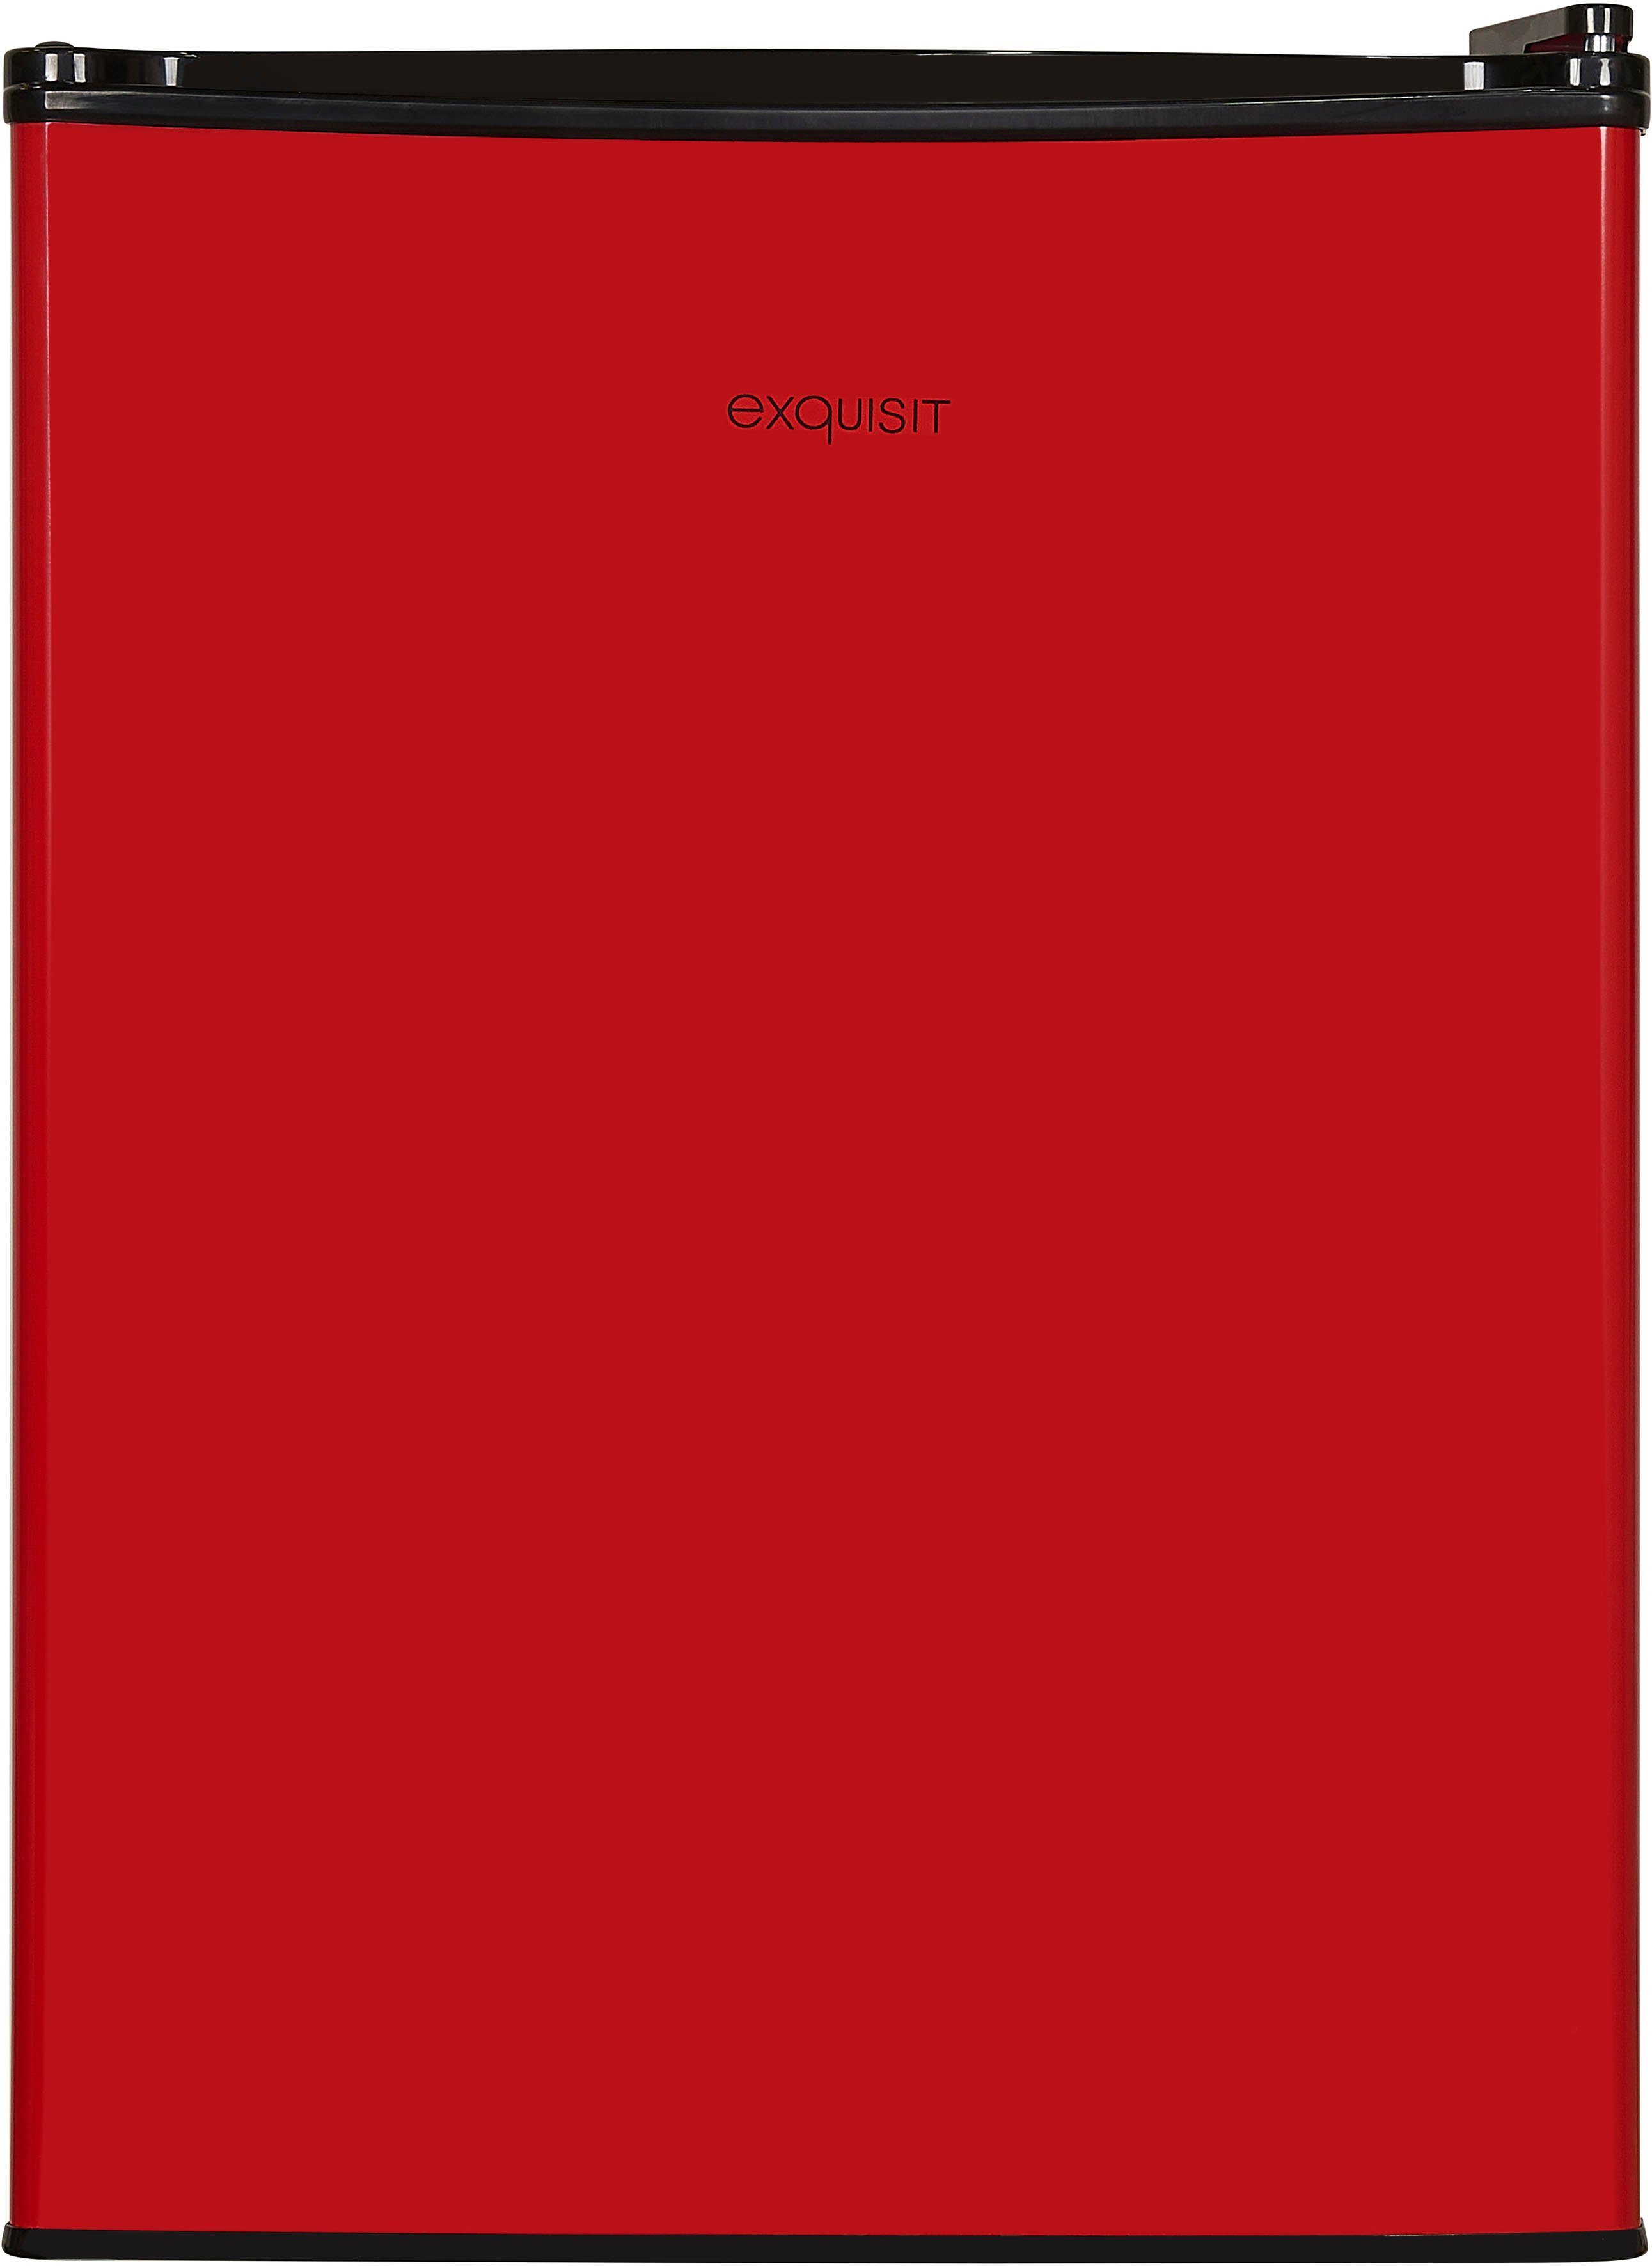 exquisit Kühlschrank KB60-V-090E rot, 62 breit cm hoch, 45 cm